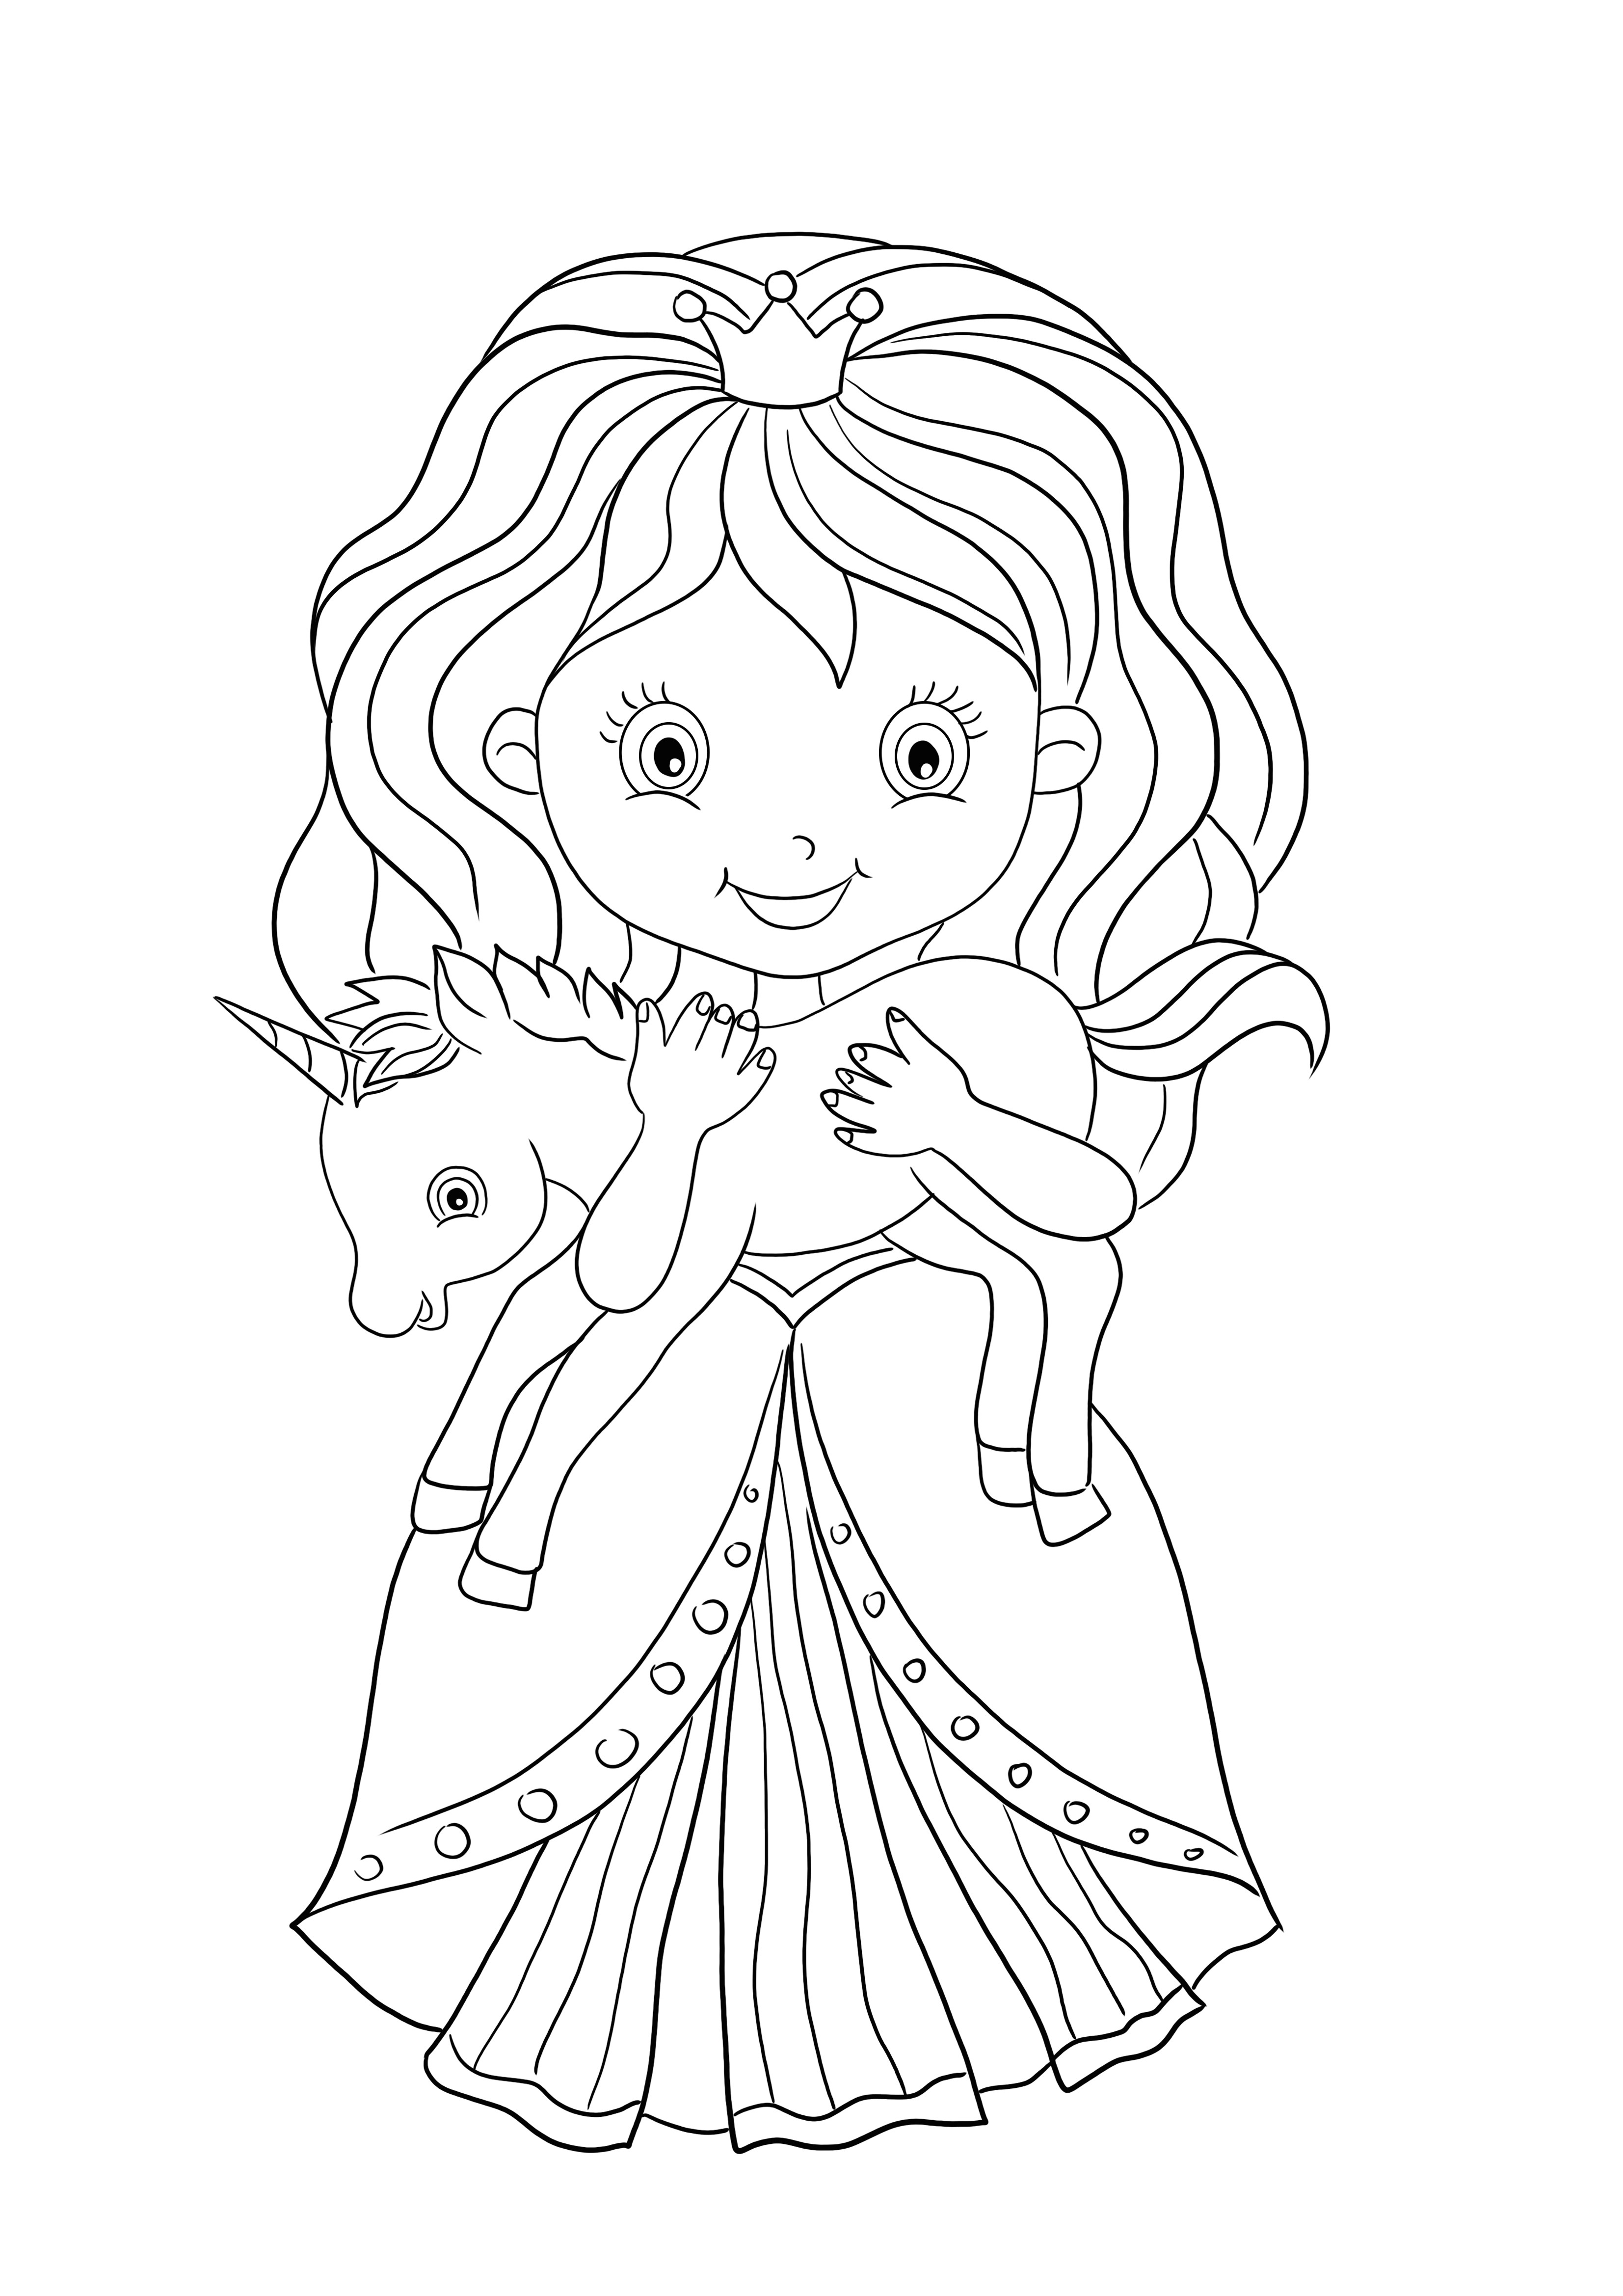 Een eenhoorn speelgoed en prinses kleurplaat gratis te downloaden en af te drukken kleurplaat